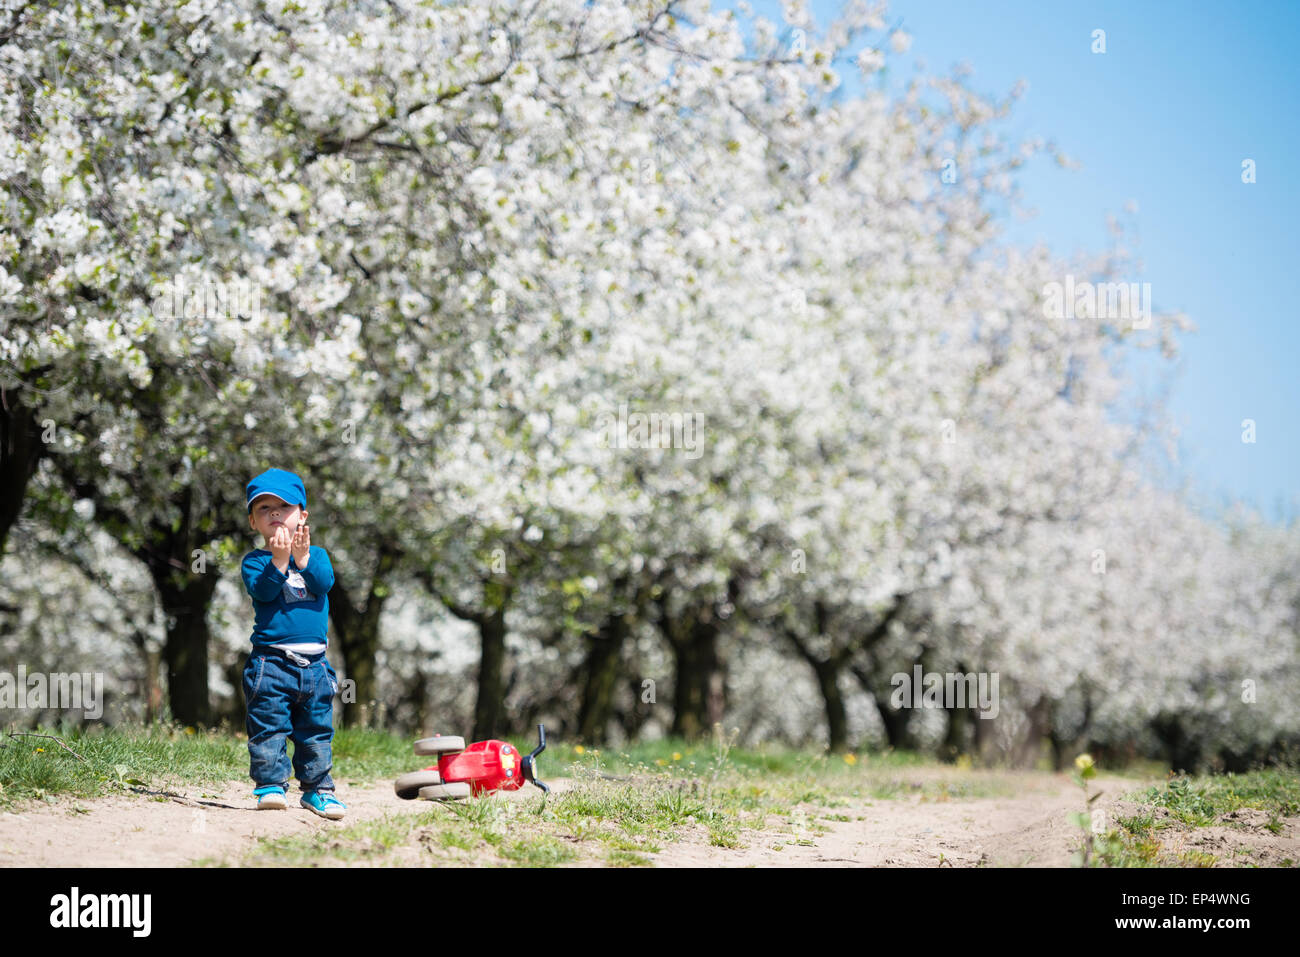 Süße kleine Kind mit schönen blühenden Kirschbäume Bäume im Hintergrund Stockfoto